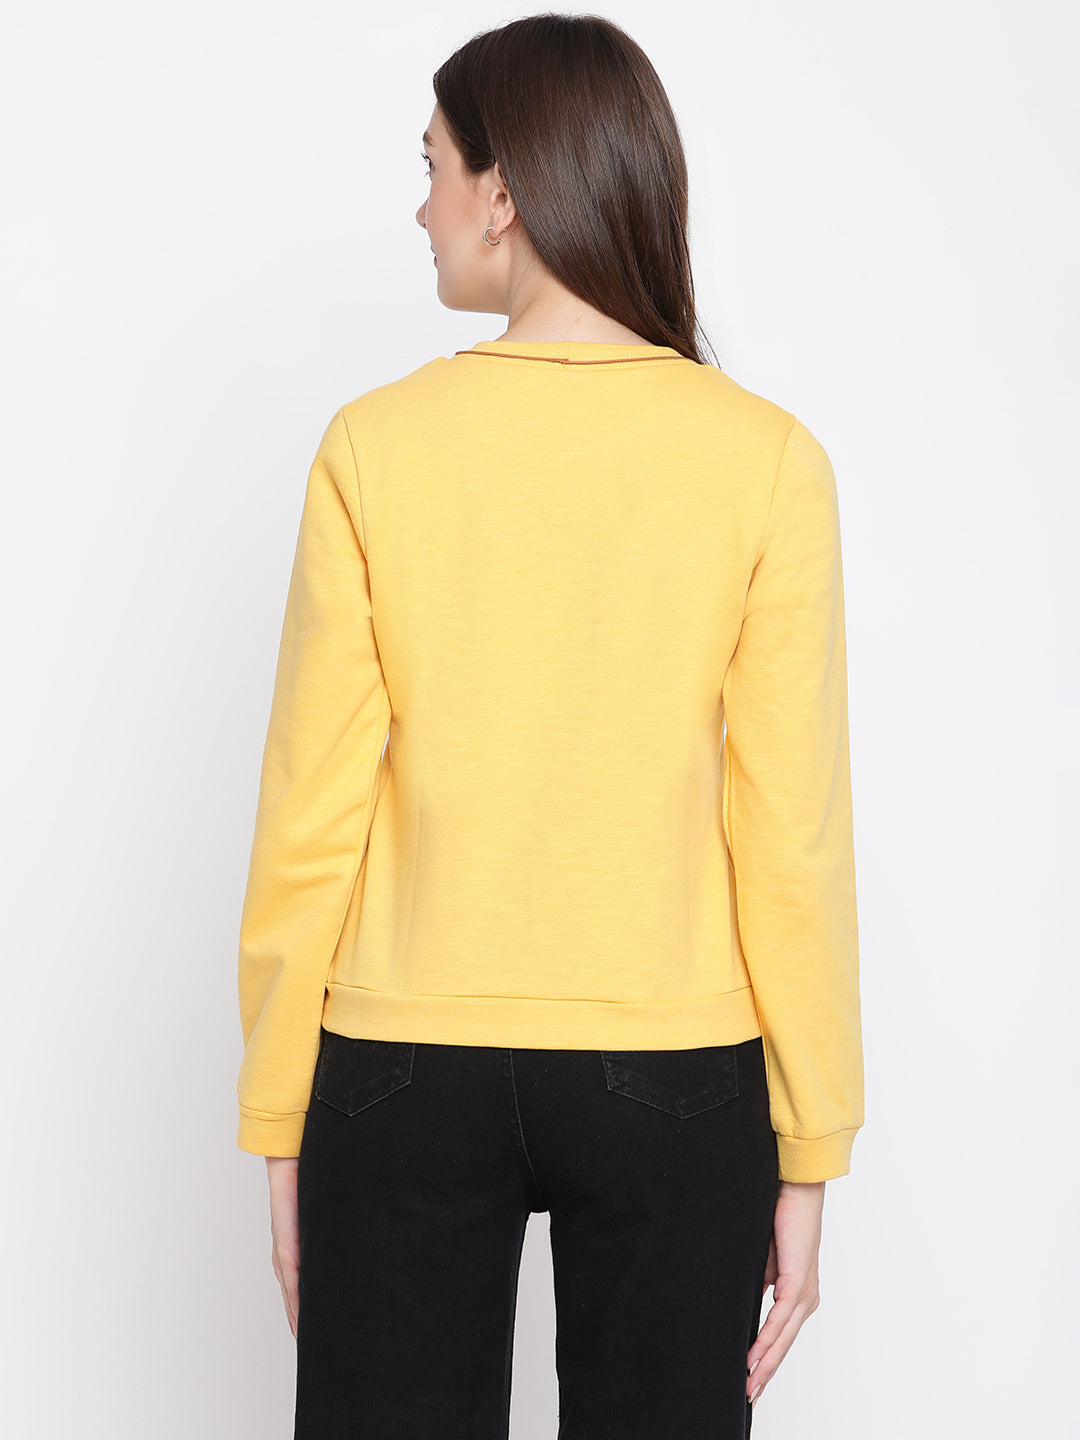 Yellow Full Sleeve Sweatshirt